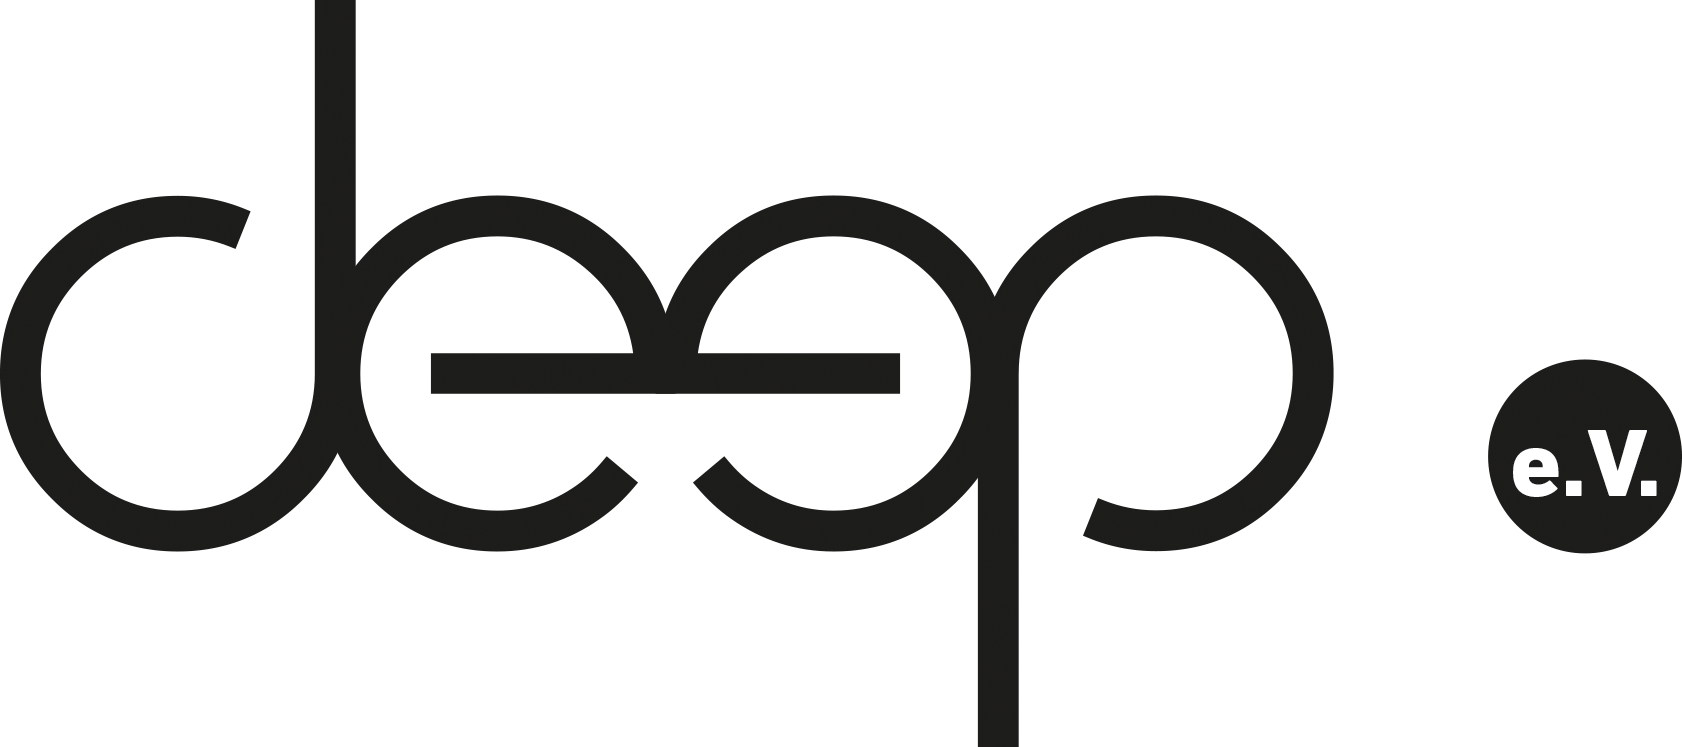 deep e.V. - Verein zur Förderung der Kultur rund um die elektronische Musik